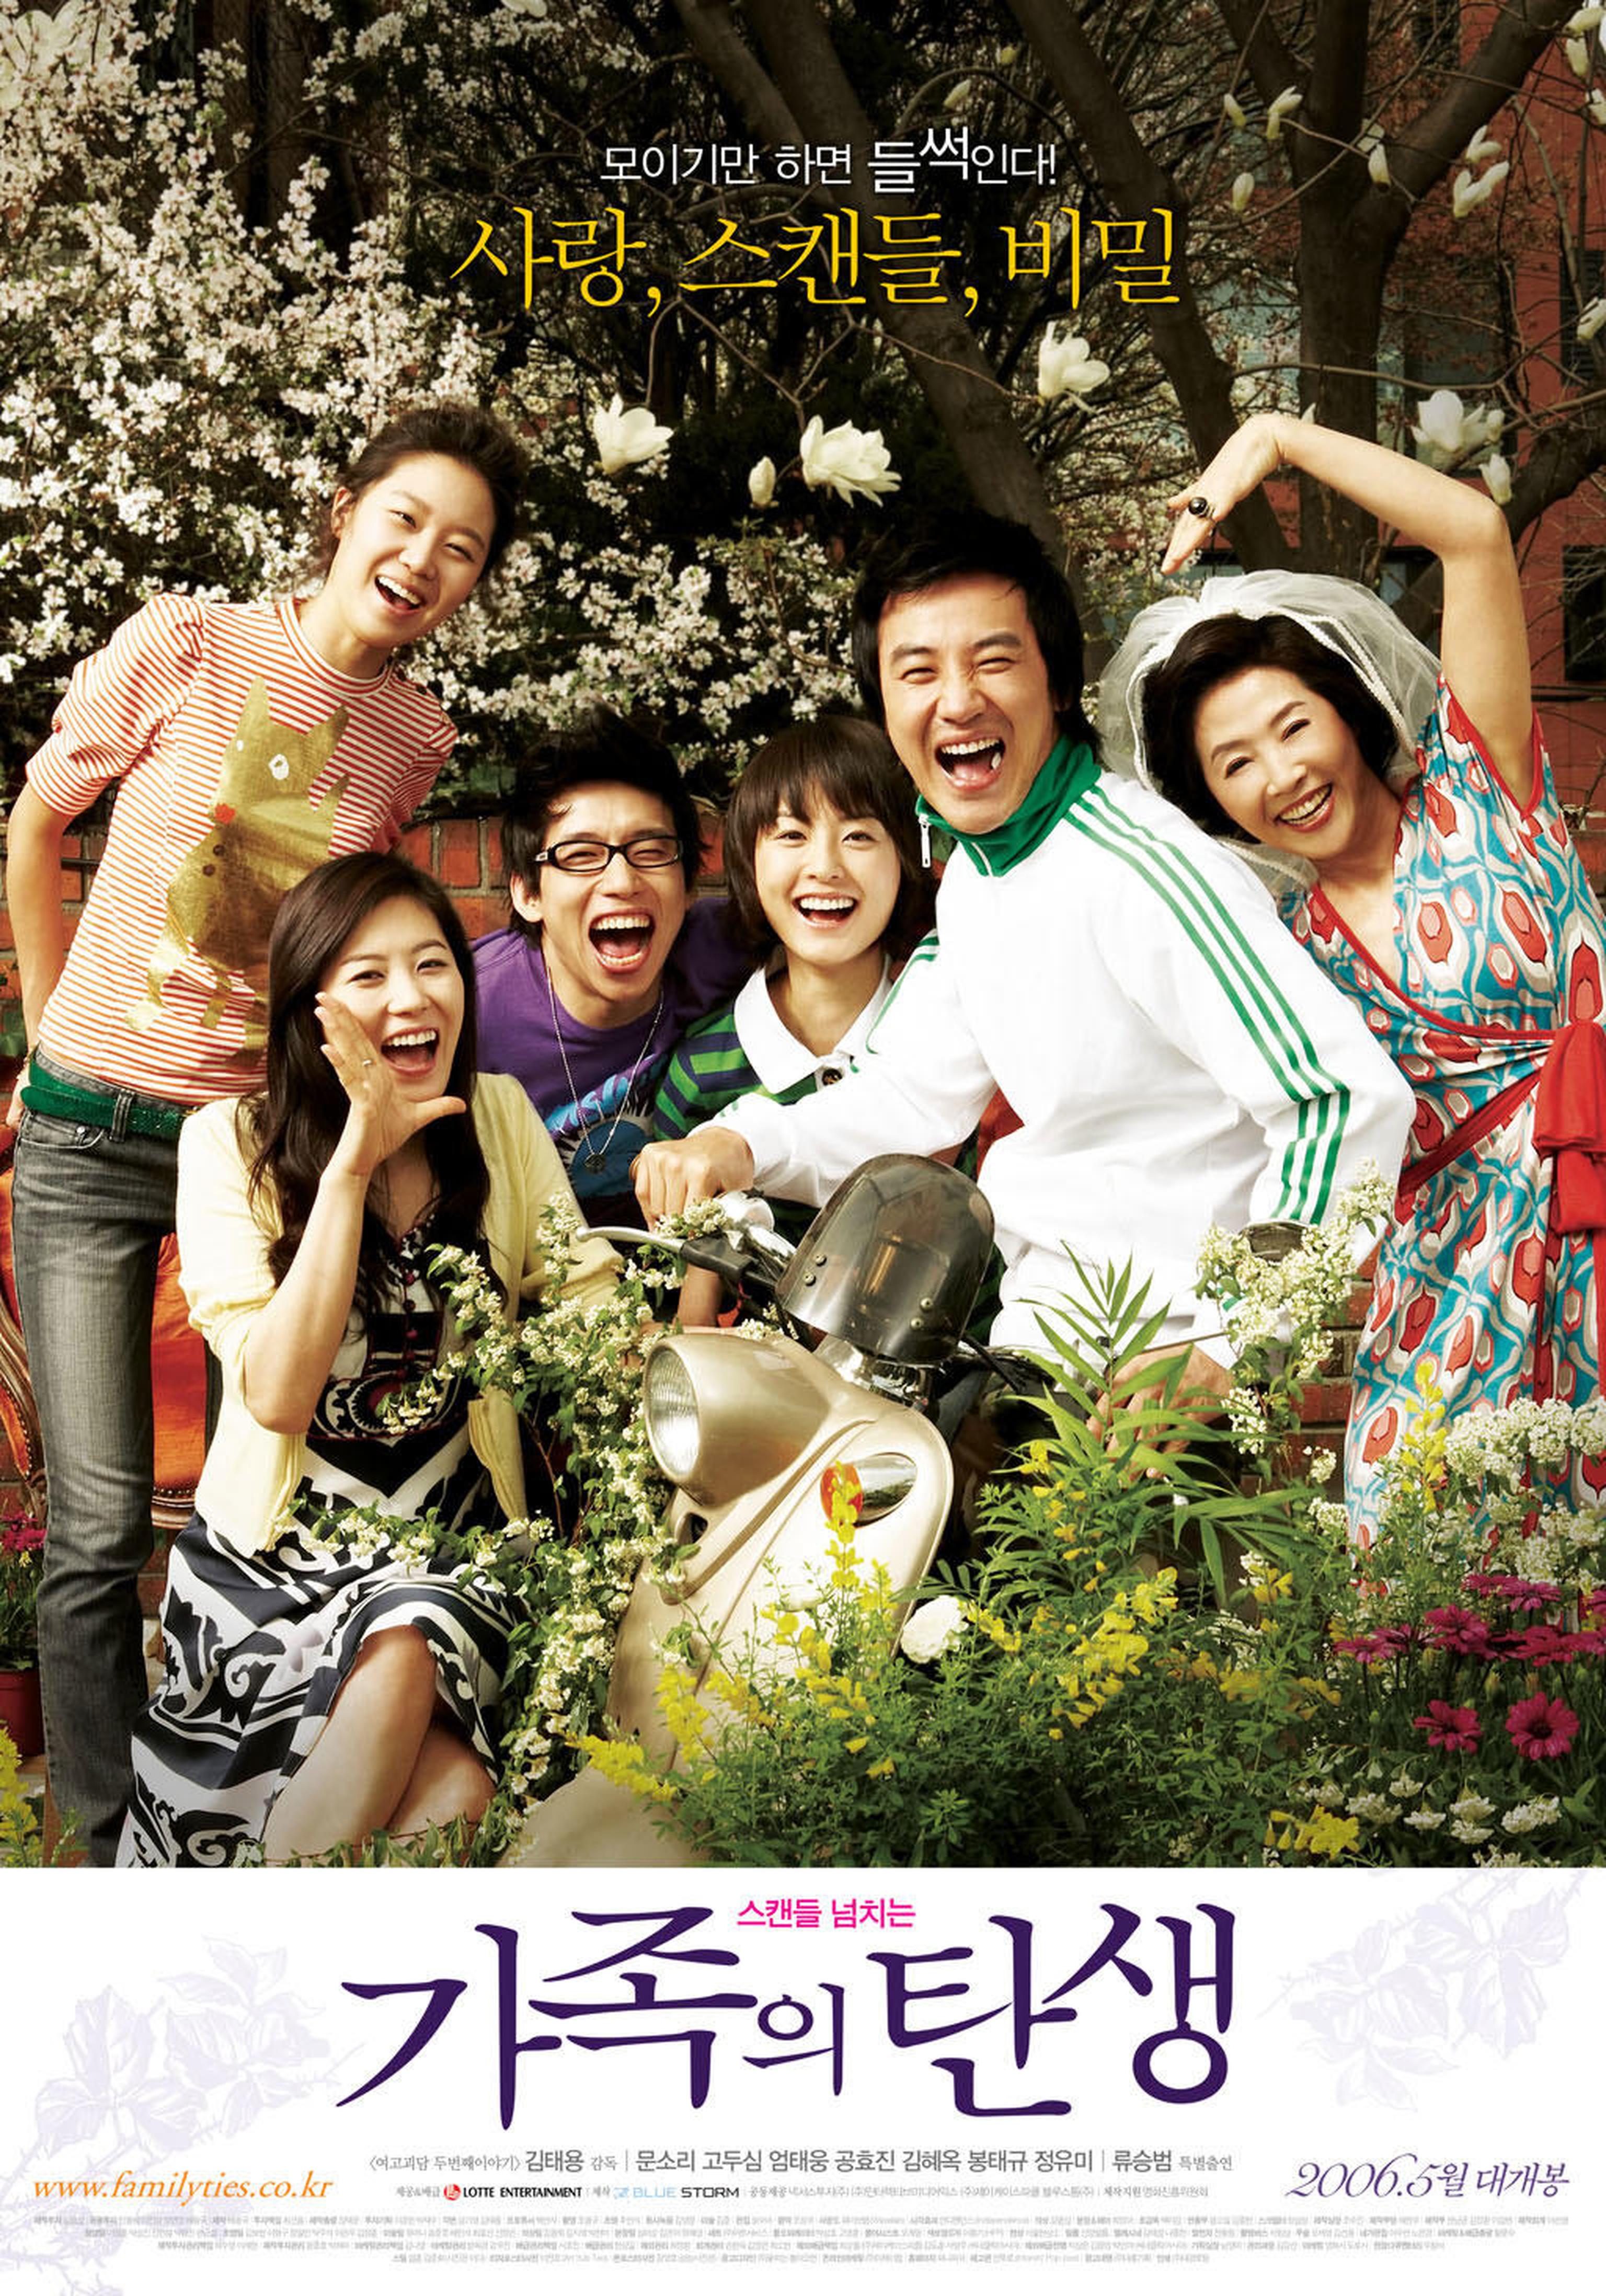 【2000-2010】《家族的诞生》 (2006)导演金泰勇。汤唯老公金泰勇导演的剧情长片处女作，导演才华显而易见。